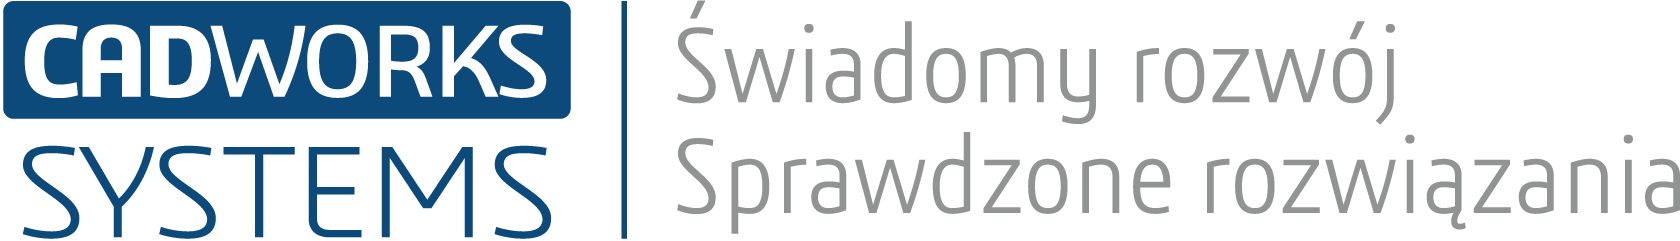 Logo CADworks Systems Świadomy rozwój sprawdzone rozwiązania